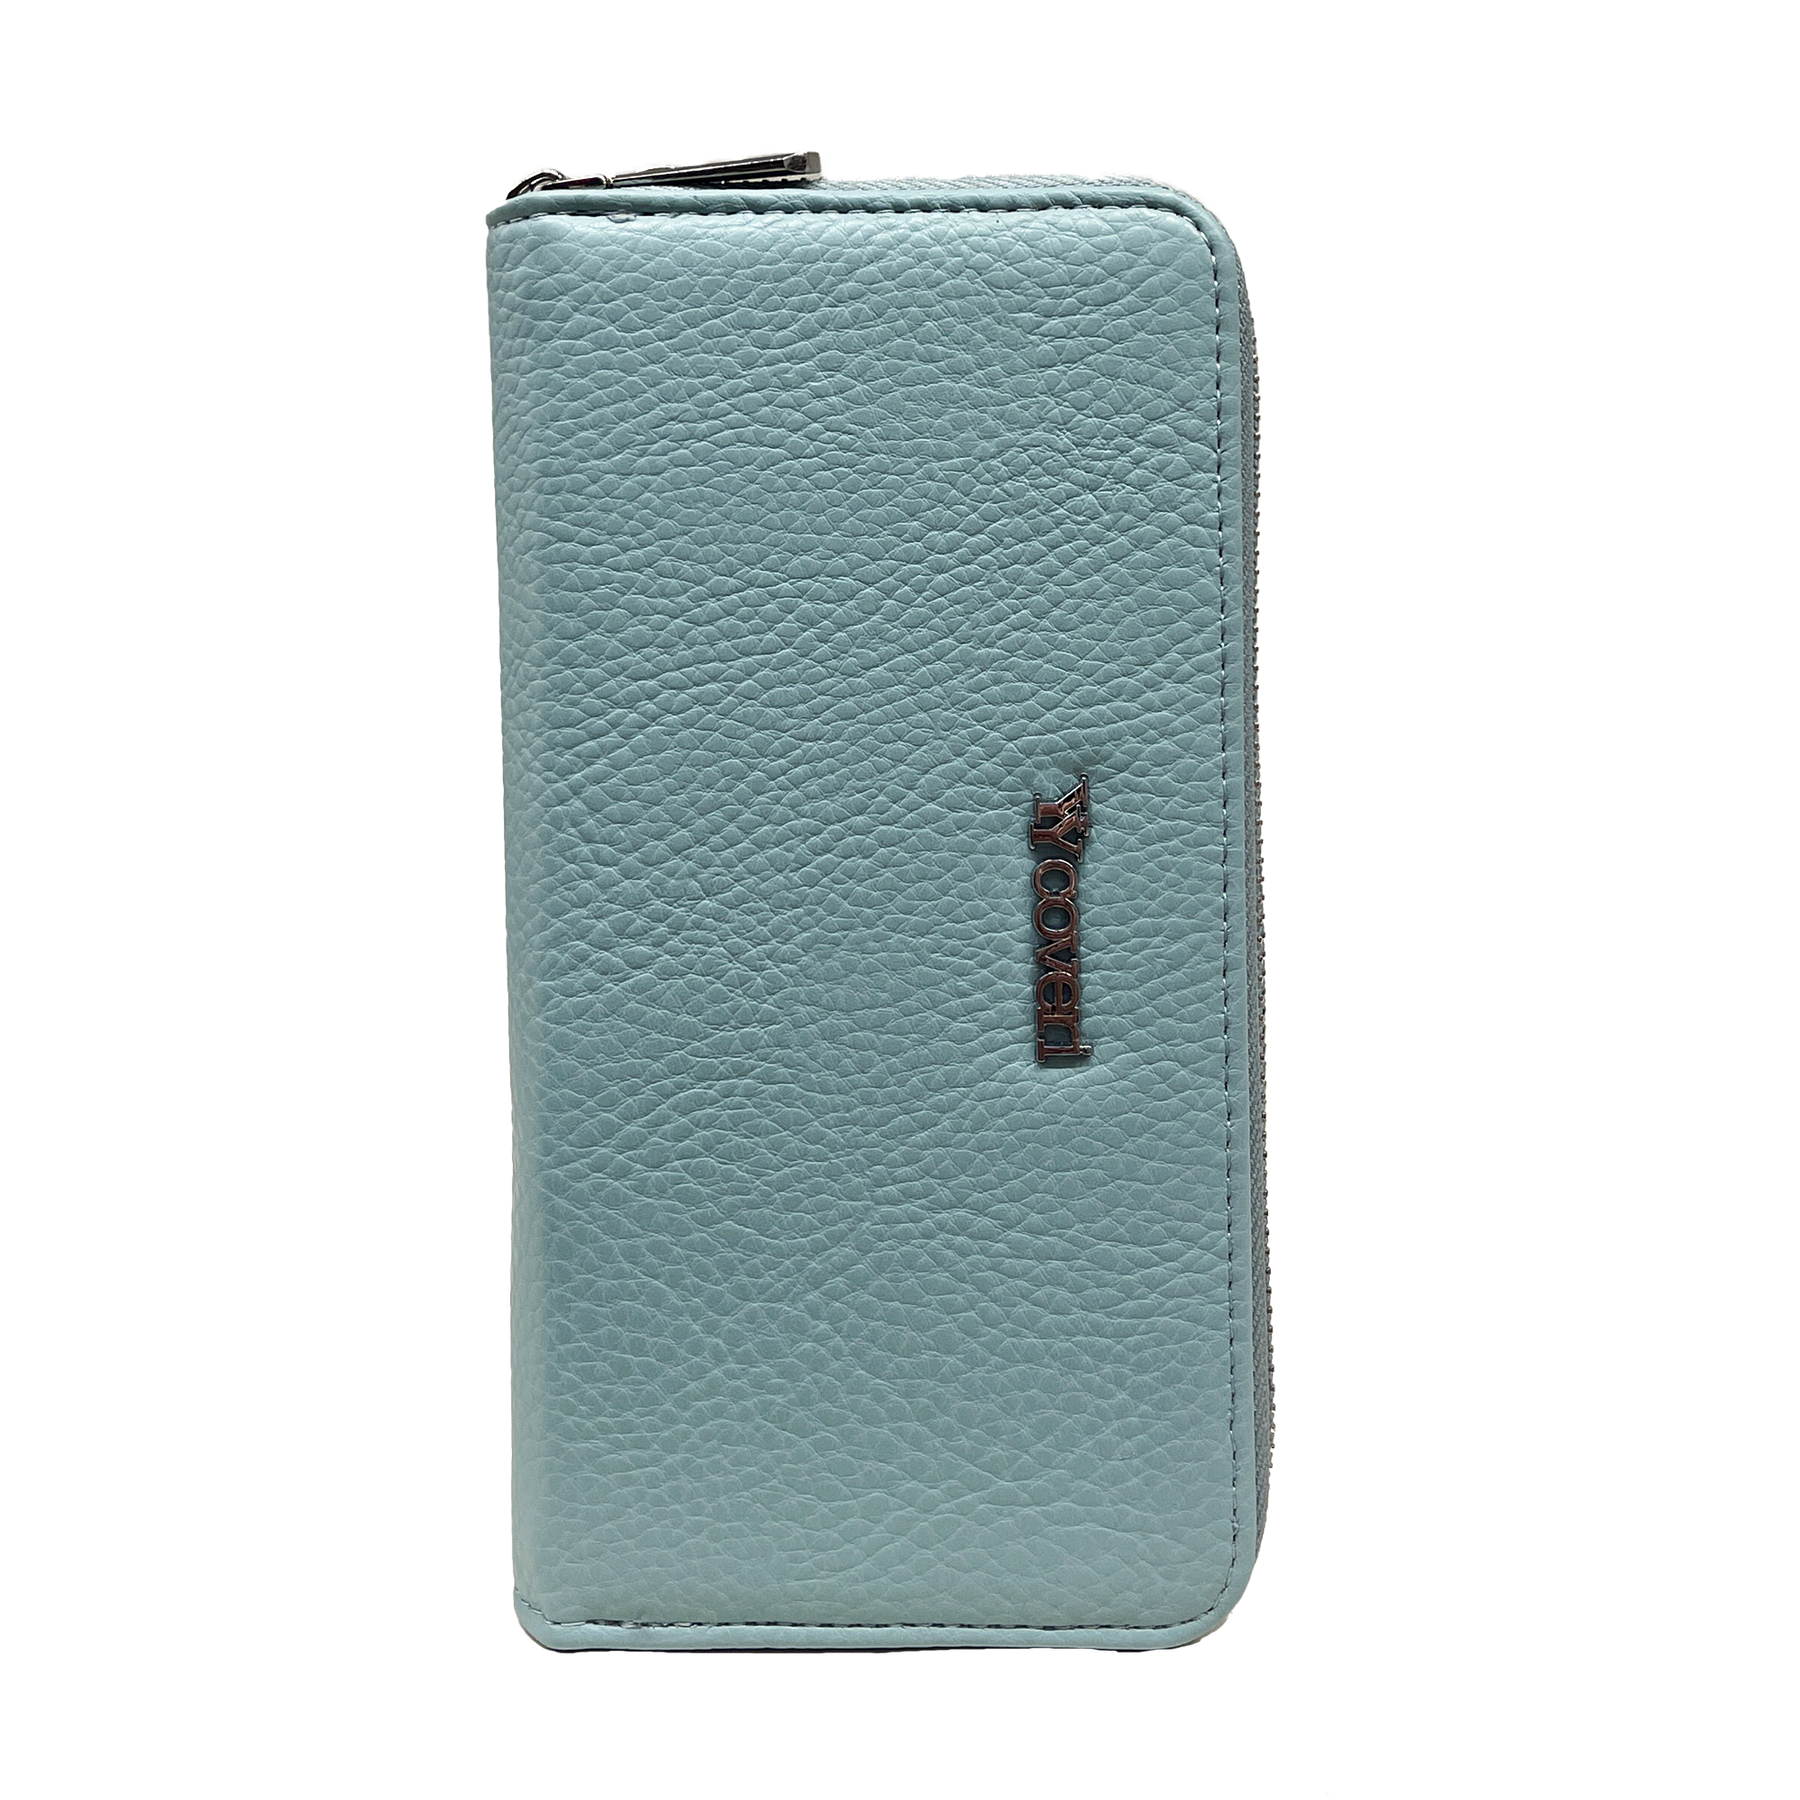 You yuang Coveri Premium Blauwe Portemonnee met Meerdere Compartimenten - Veilig en Stijlvol